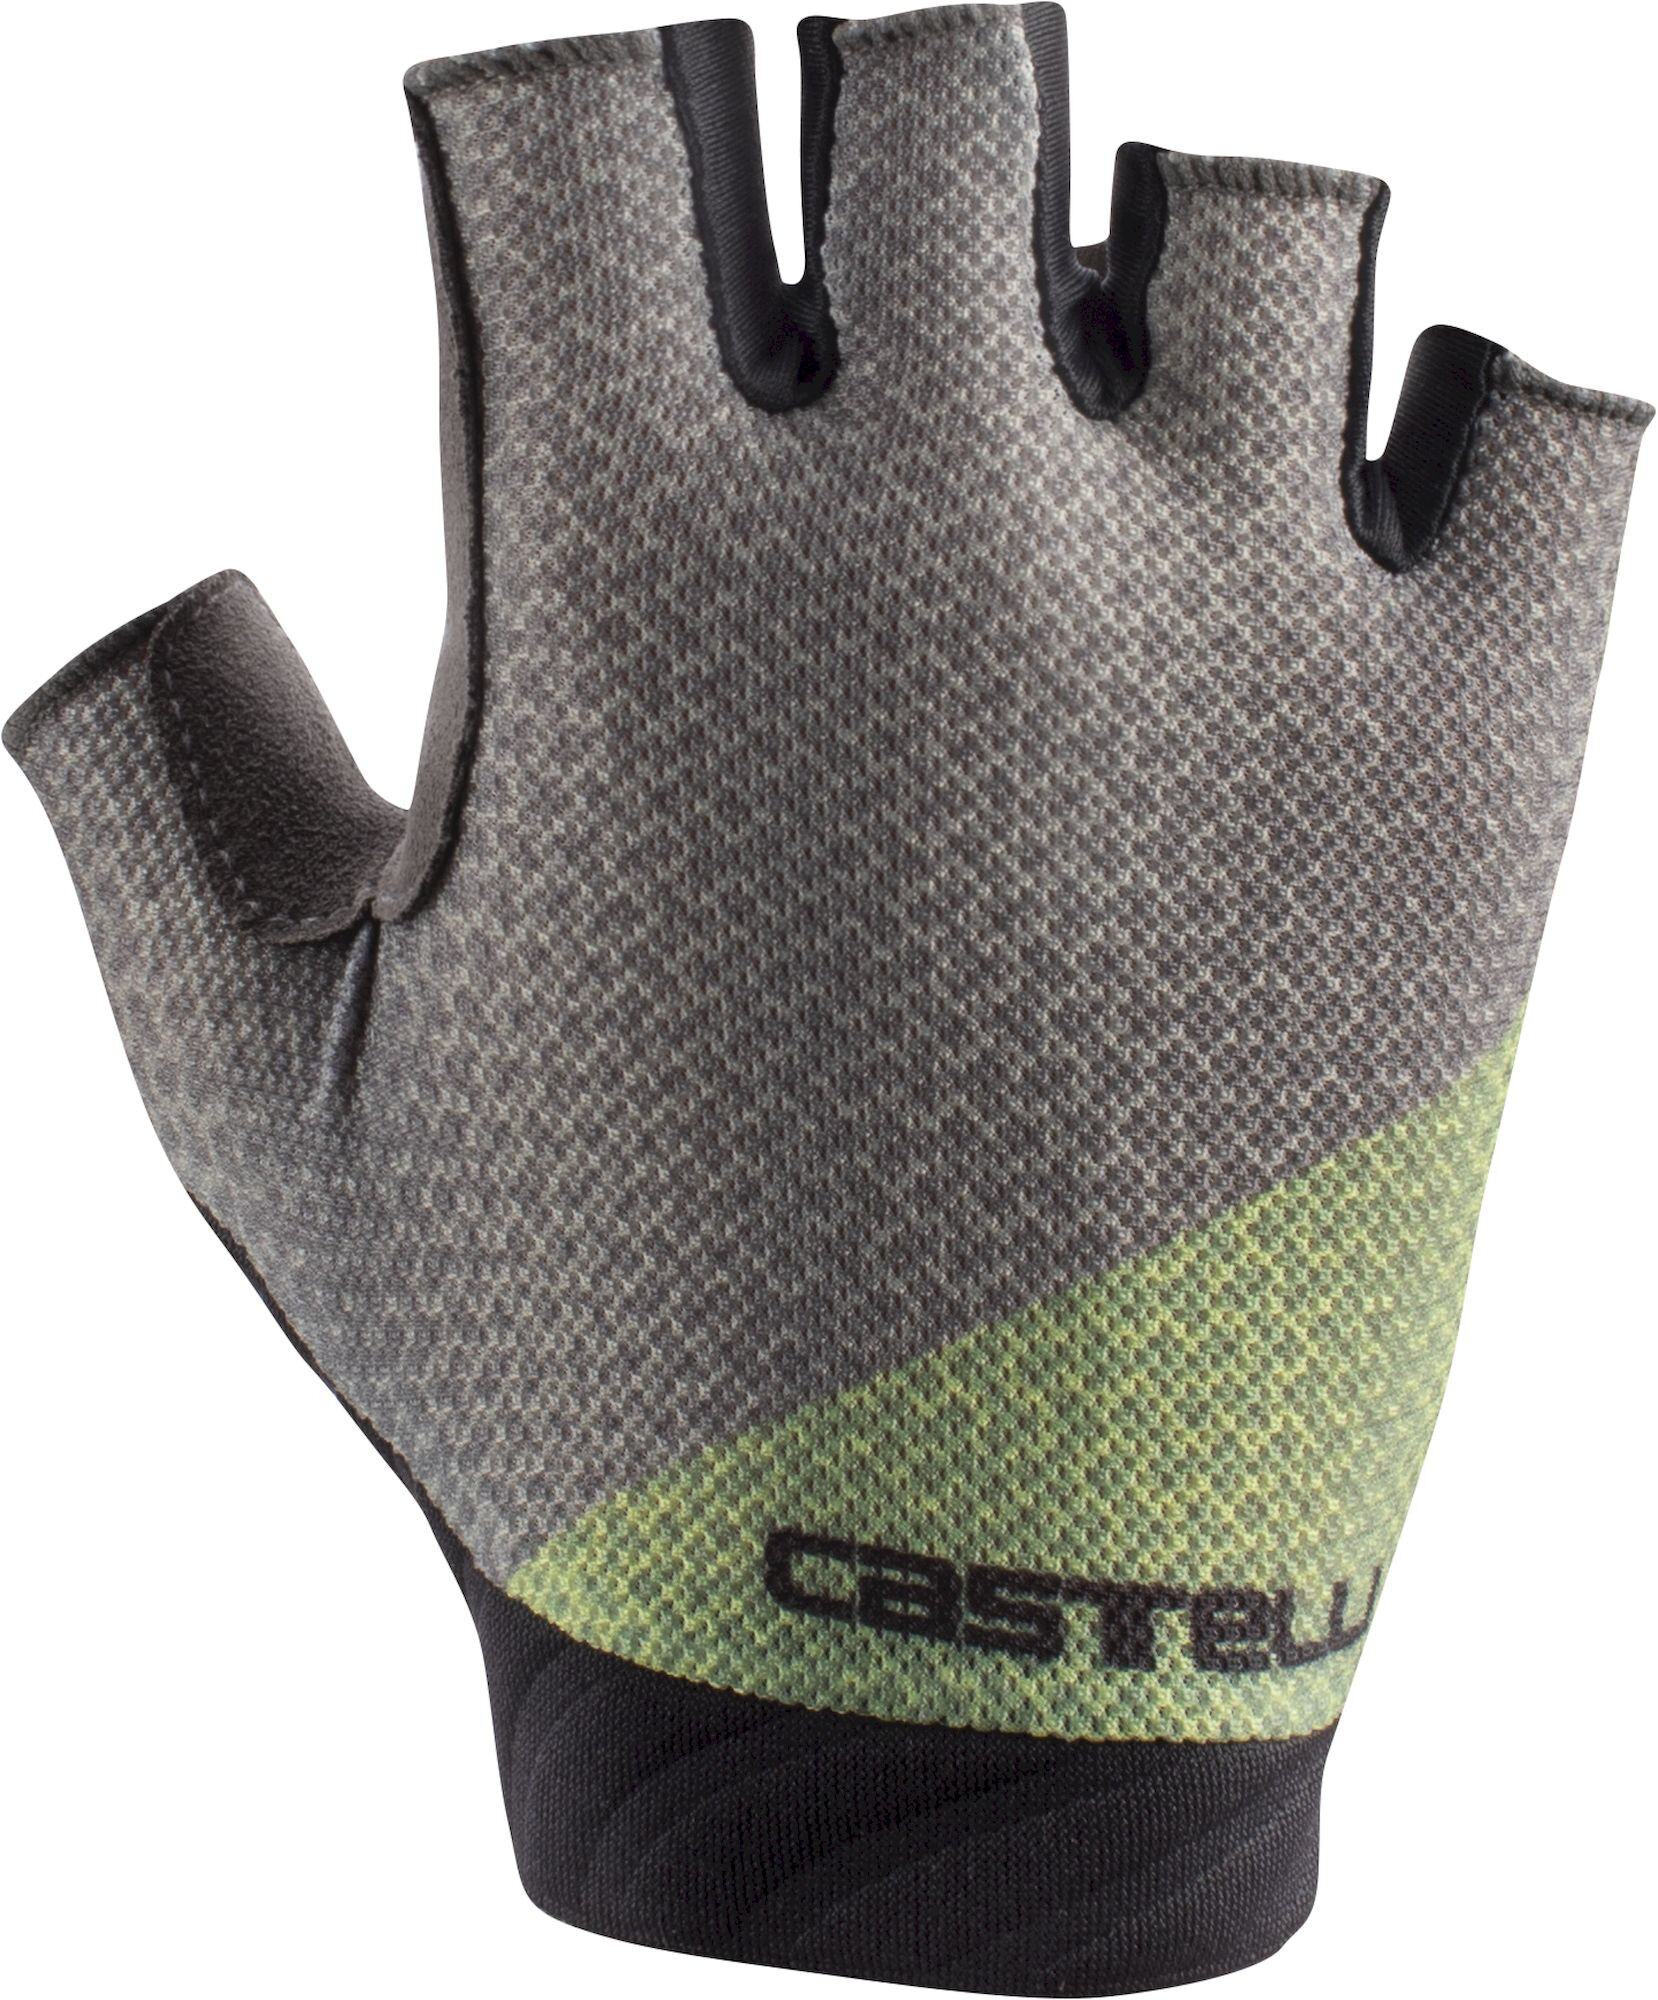 Castelli Roubaix Gel 2 Glove - Fietshandschoenen